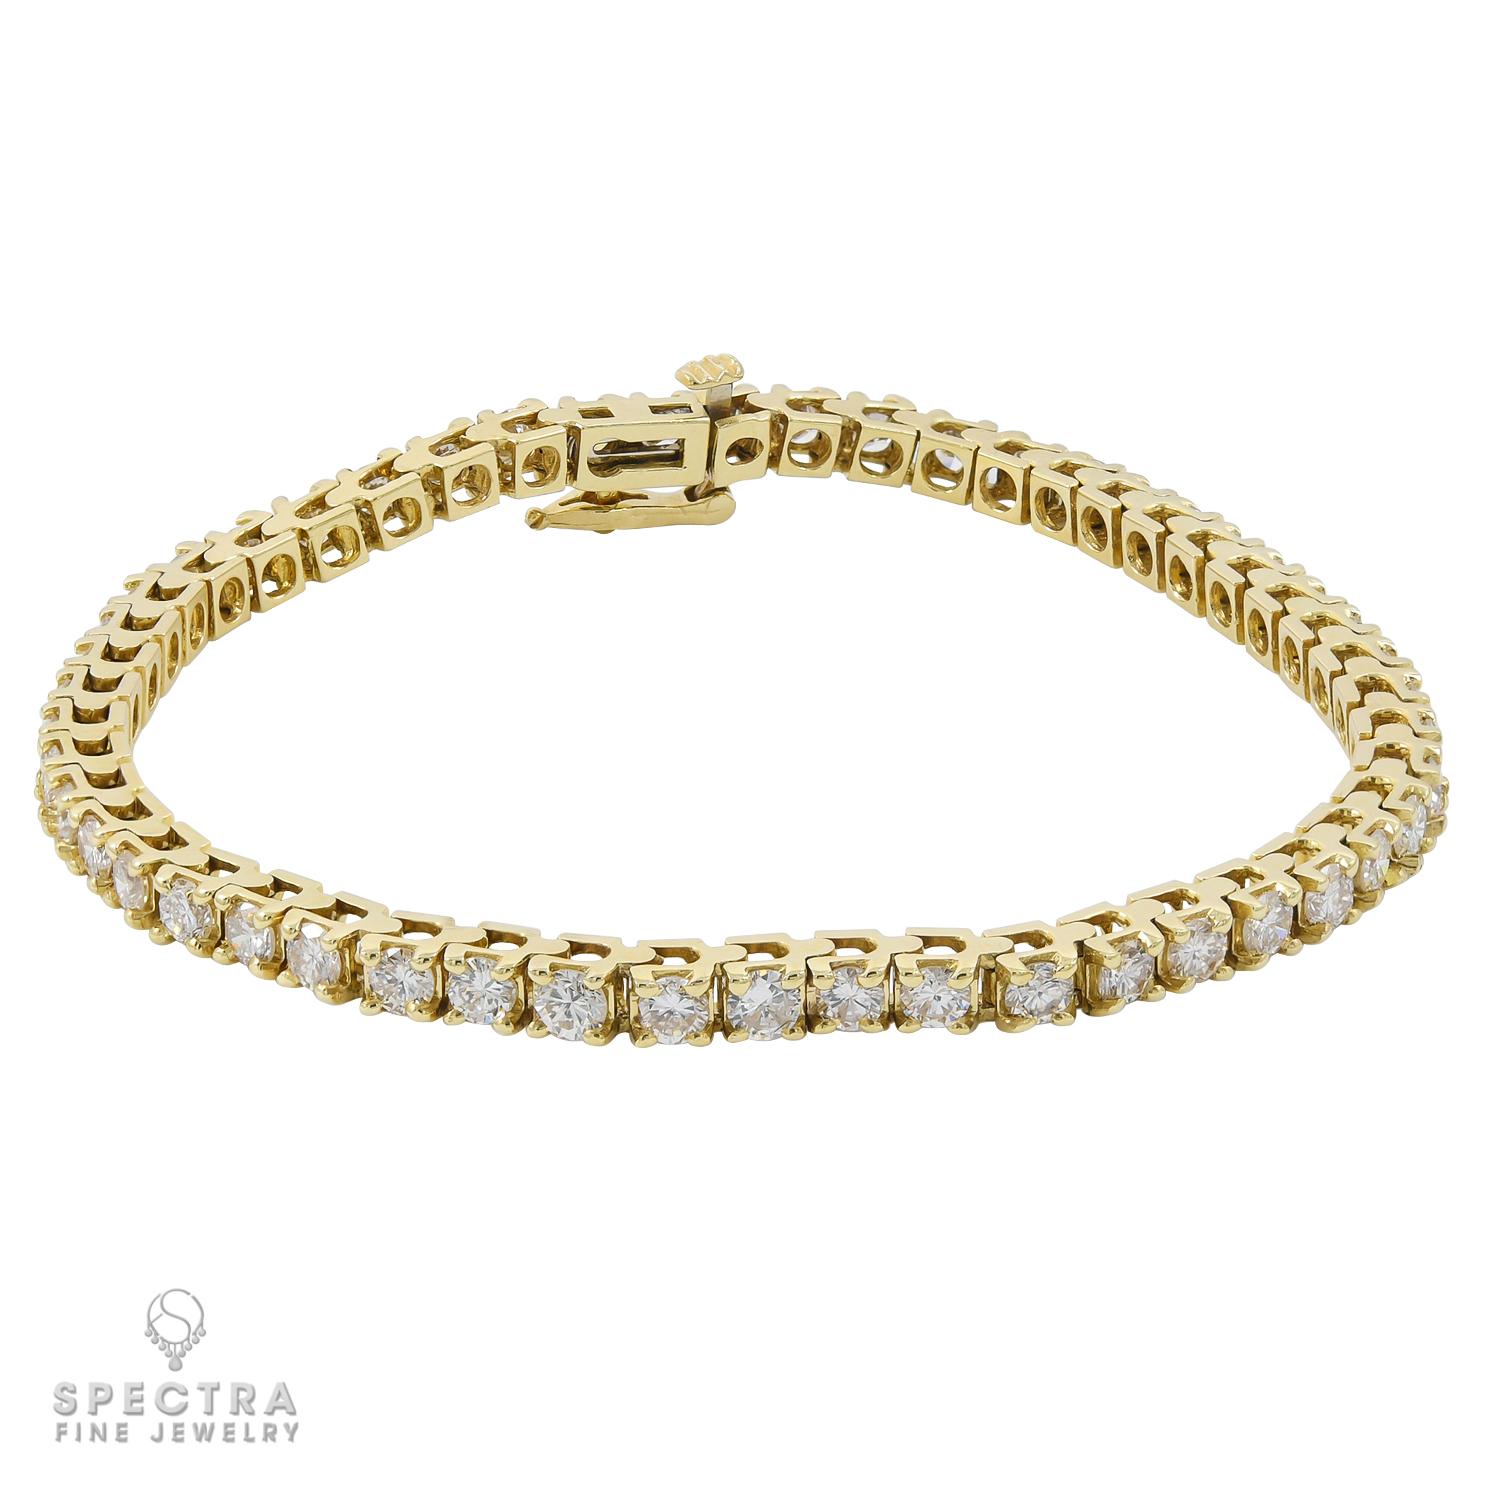 Un bracelet tennis de grande classe fait de diamants en or jaune 14k.
50 diamants d'un poids total de 5 carats.
0,1 carat chacun. Les diamants sont naturels, de couleur H-I et de pureté SI.
7 pouces de long.
Poids brut 11,56 grammes.